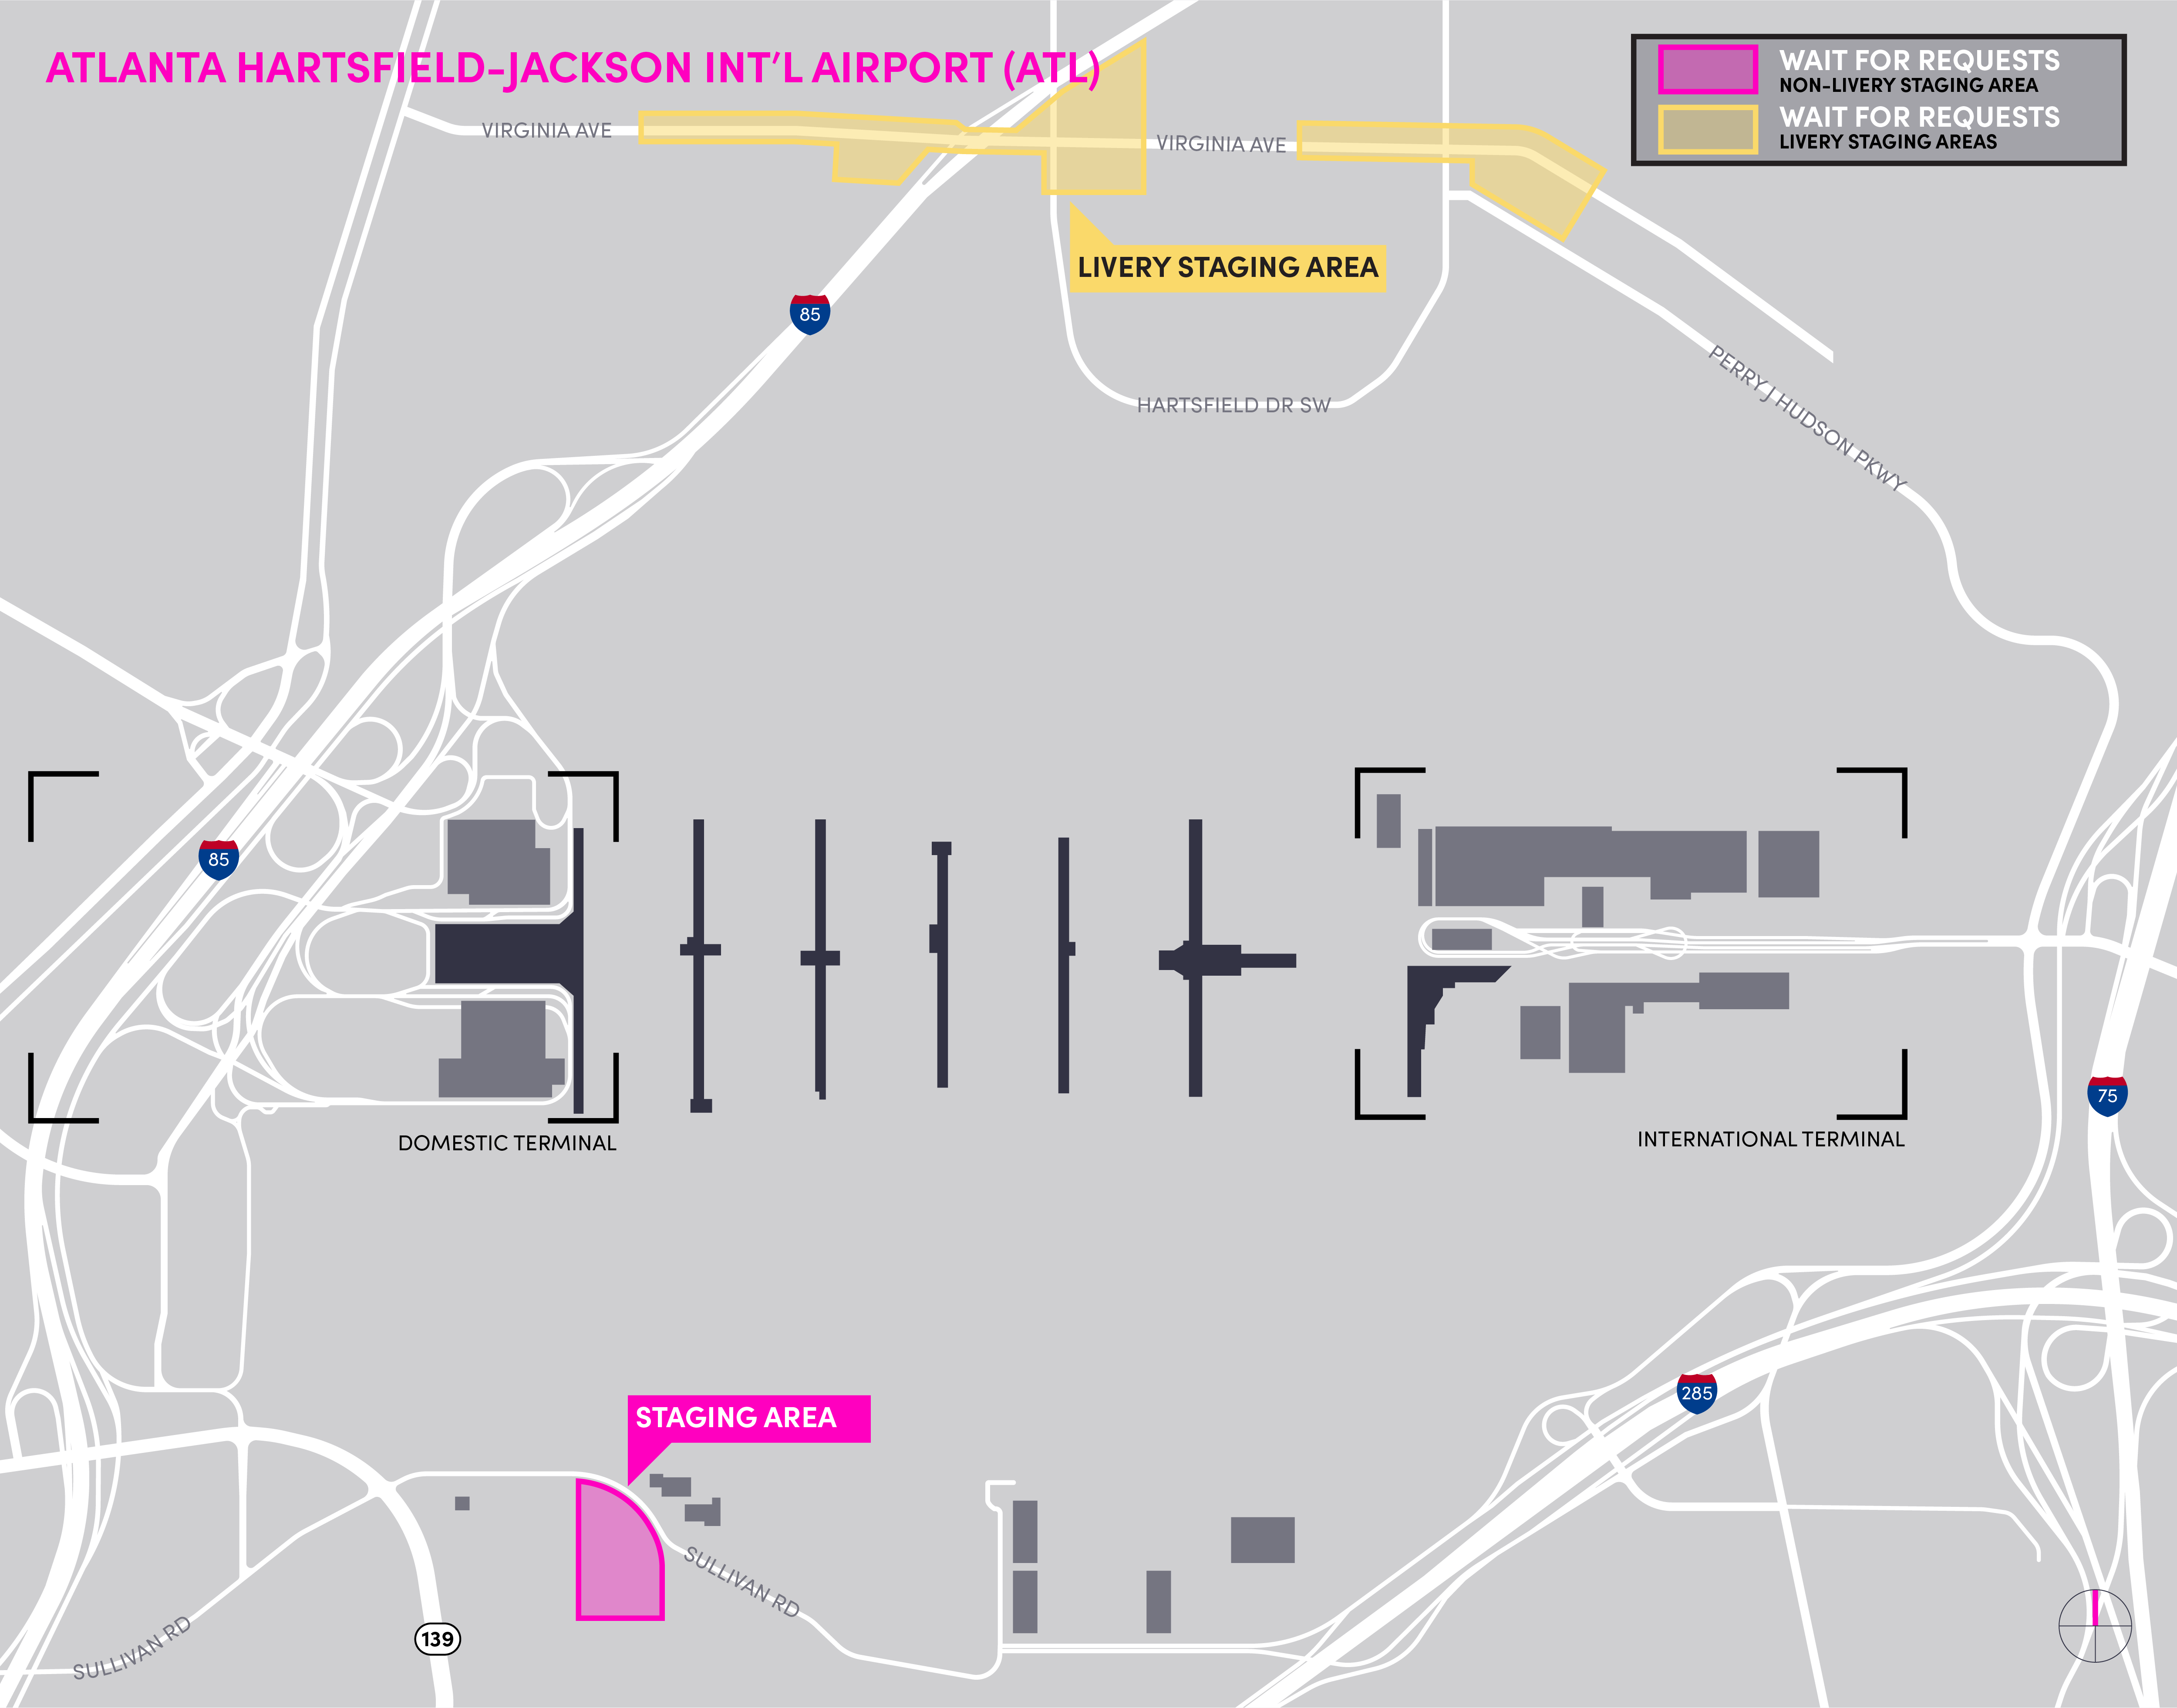 Carte de l'aéroport ATL détaillant la zone d'attente et la zone d'attente pour les livraisons.